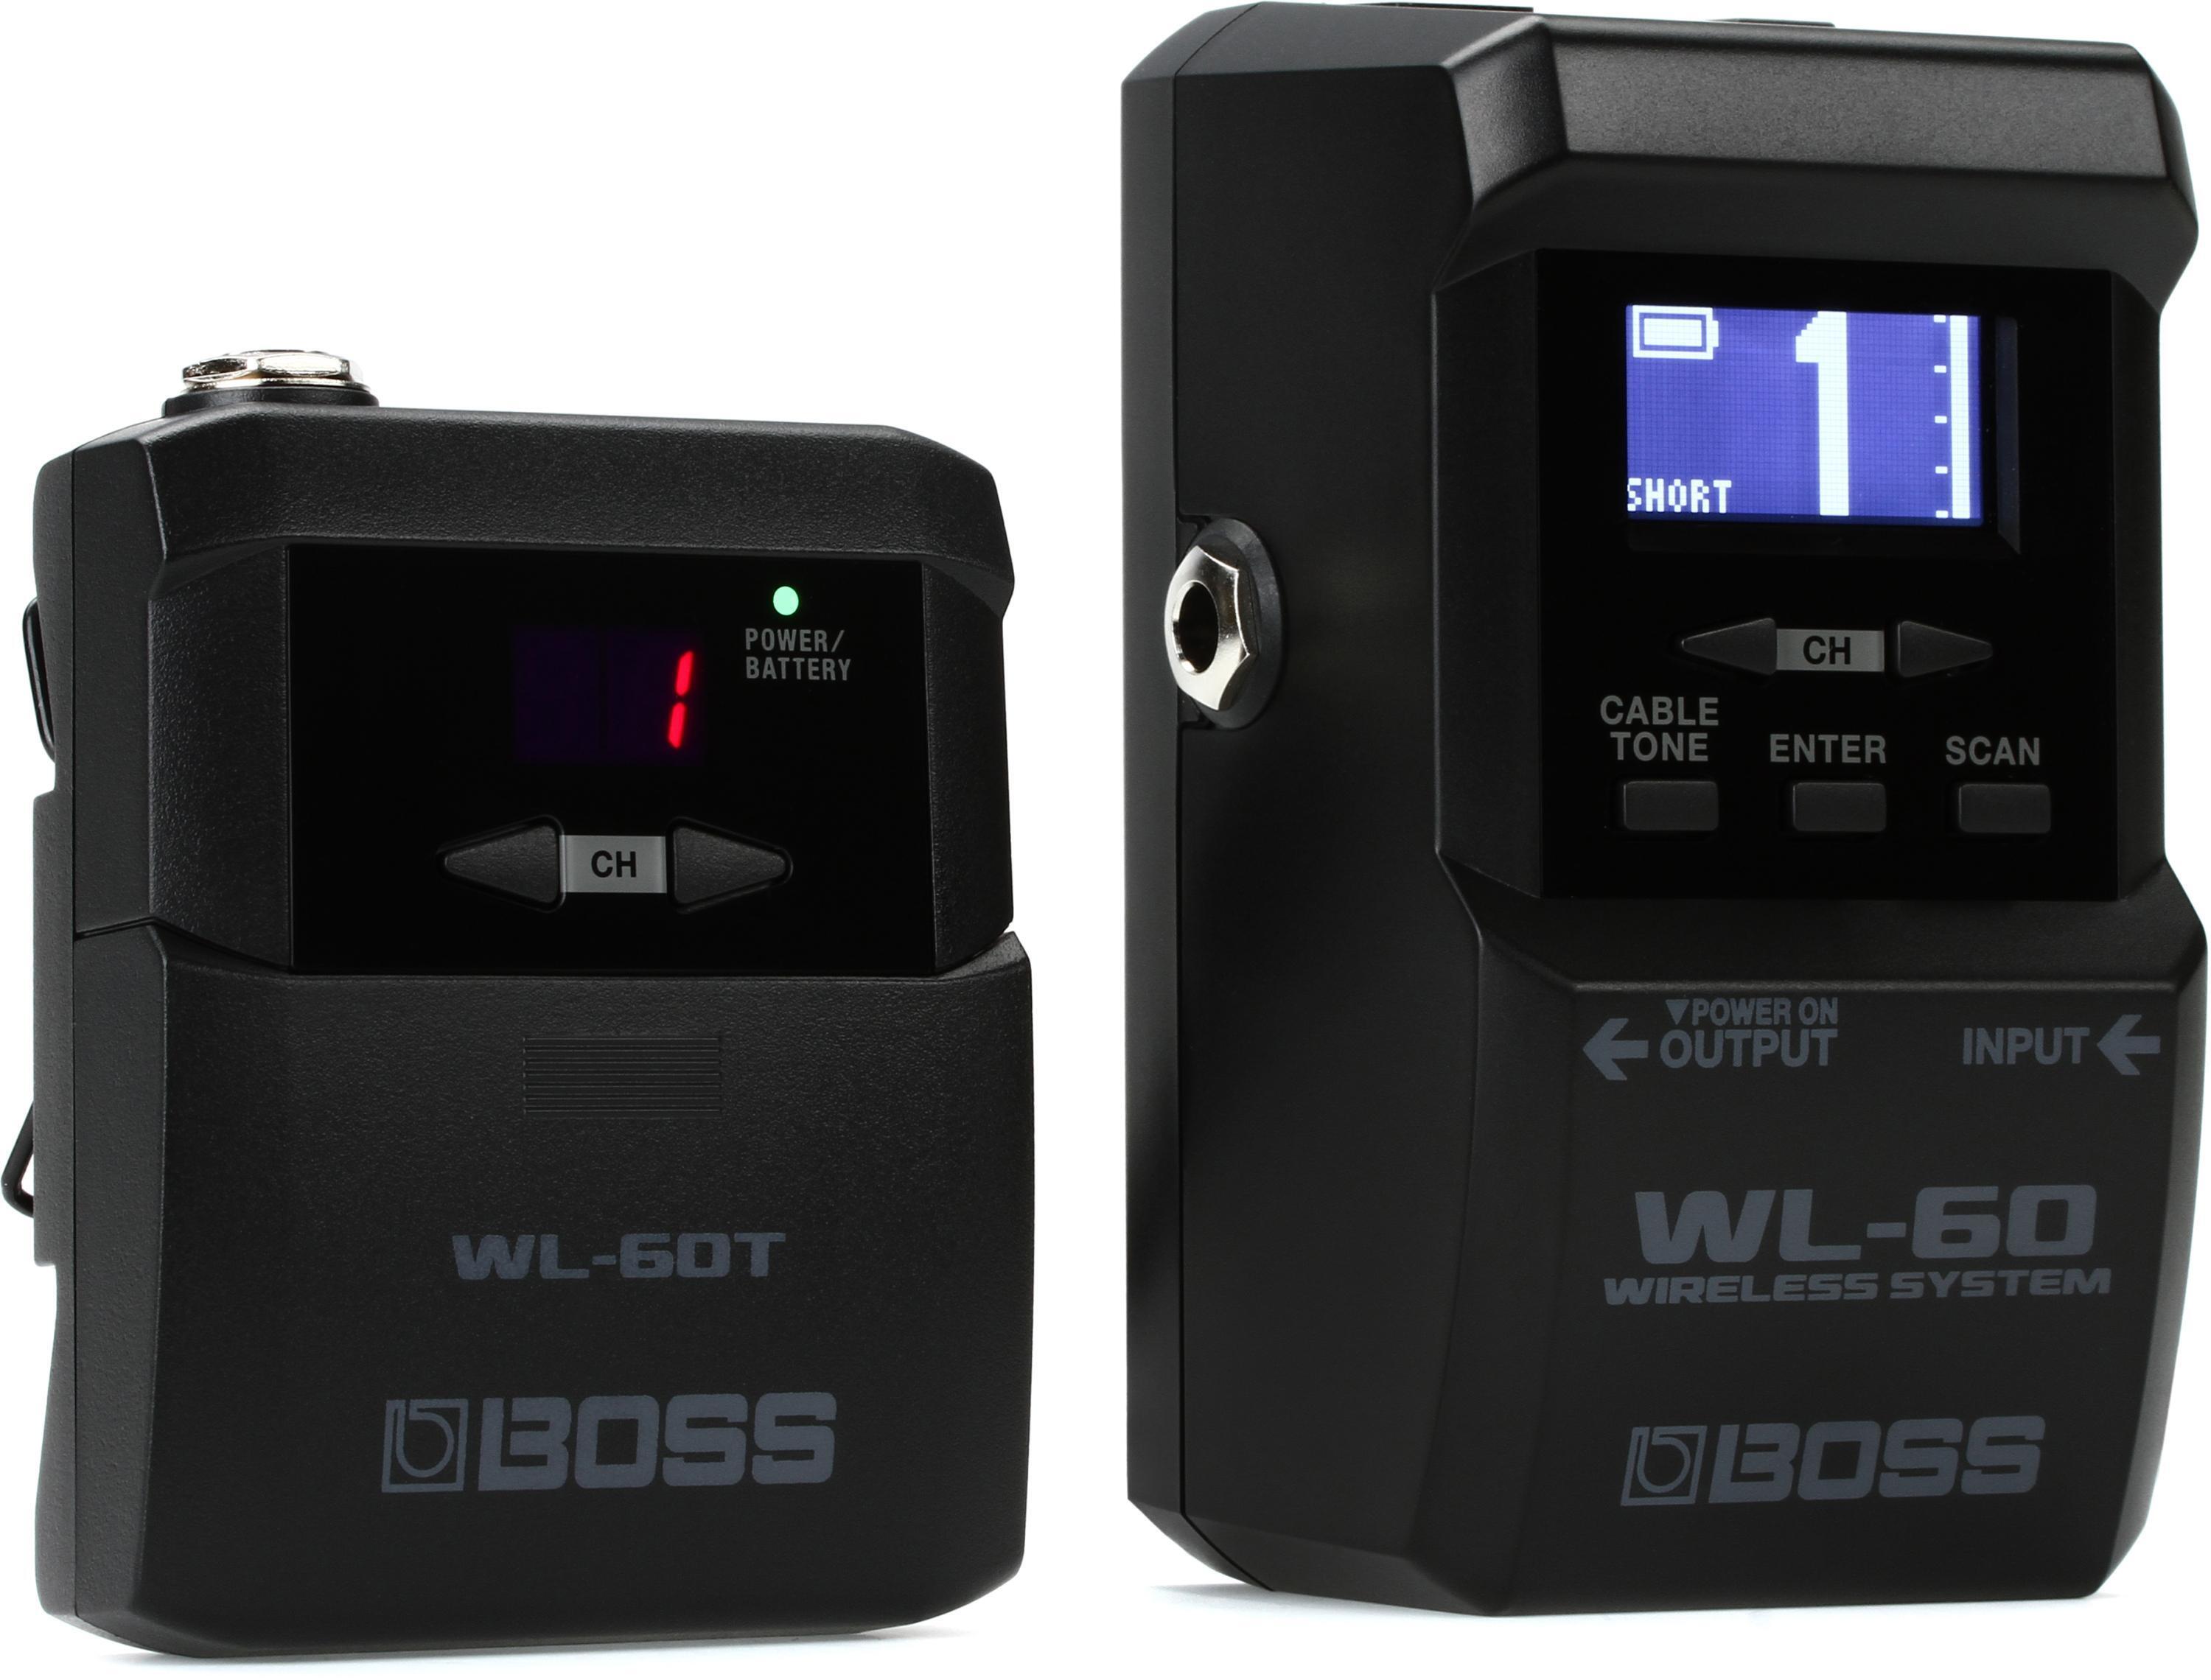 WL-60 Wireless System (銉堛儵銉炽偣銉熴儍銈裤兗銉涖儷銉€銉间粯)